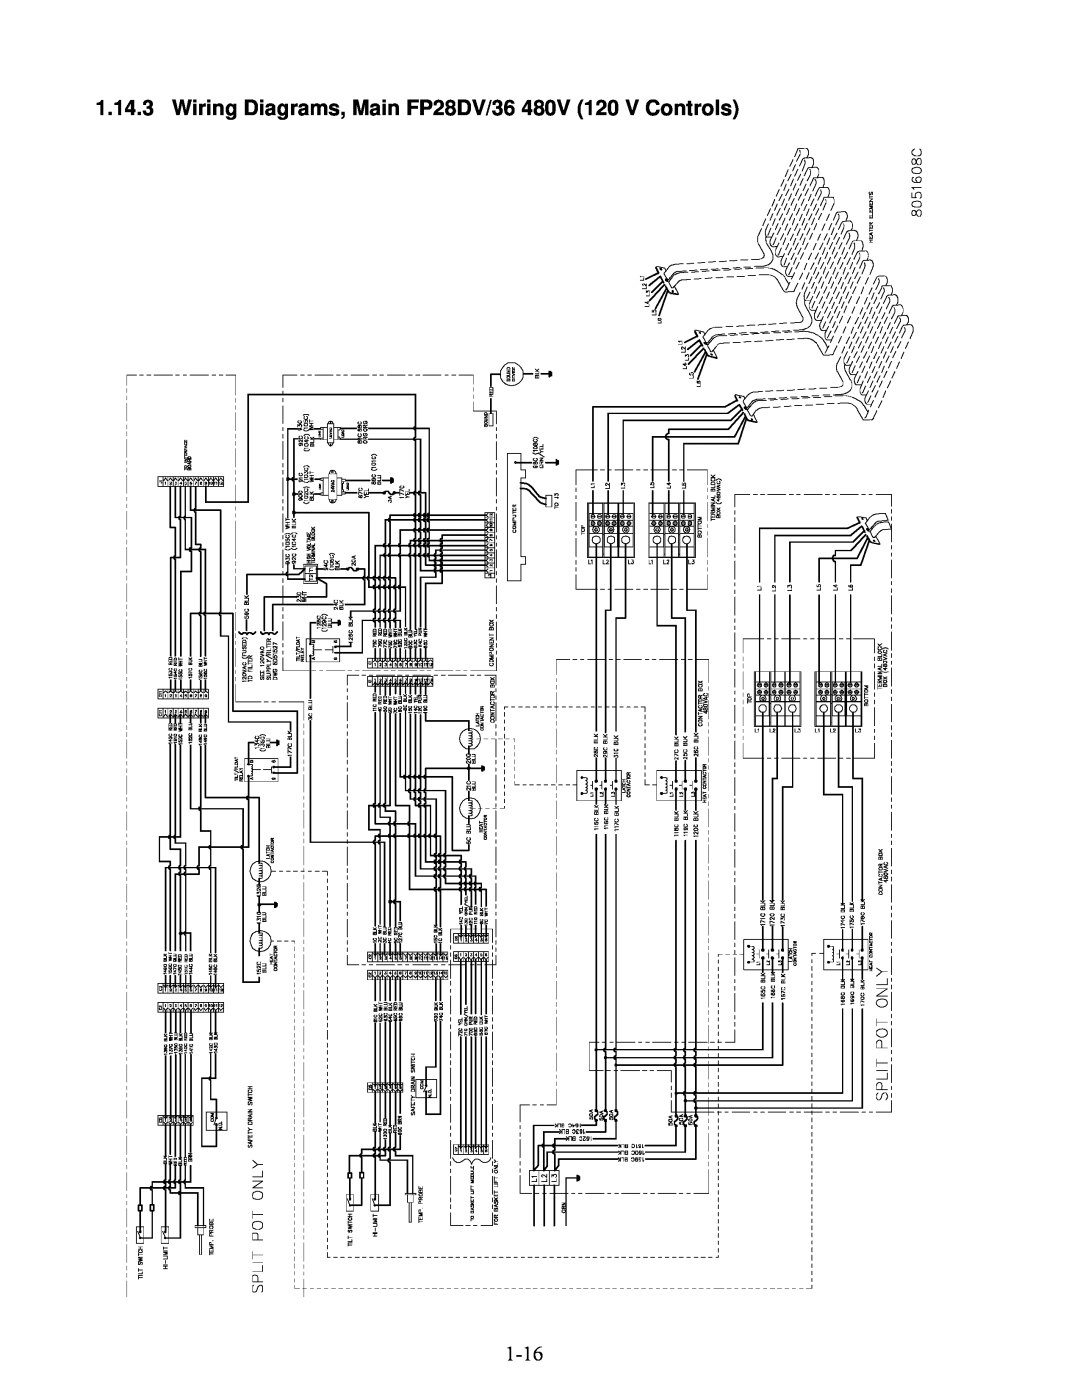 Frymaster 2836 manual Wiring Diagrams, Main FP28DV/36 480V 120 V Controls 